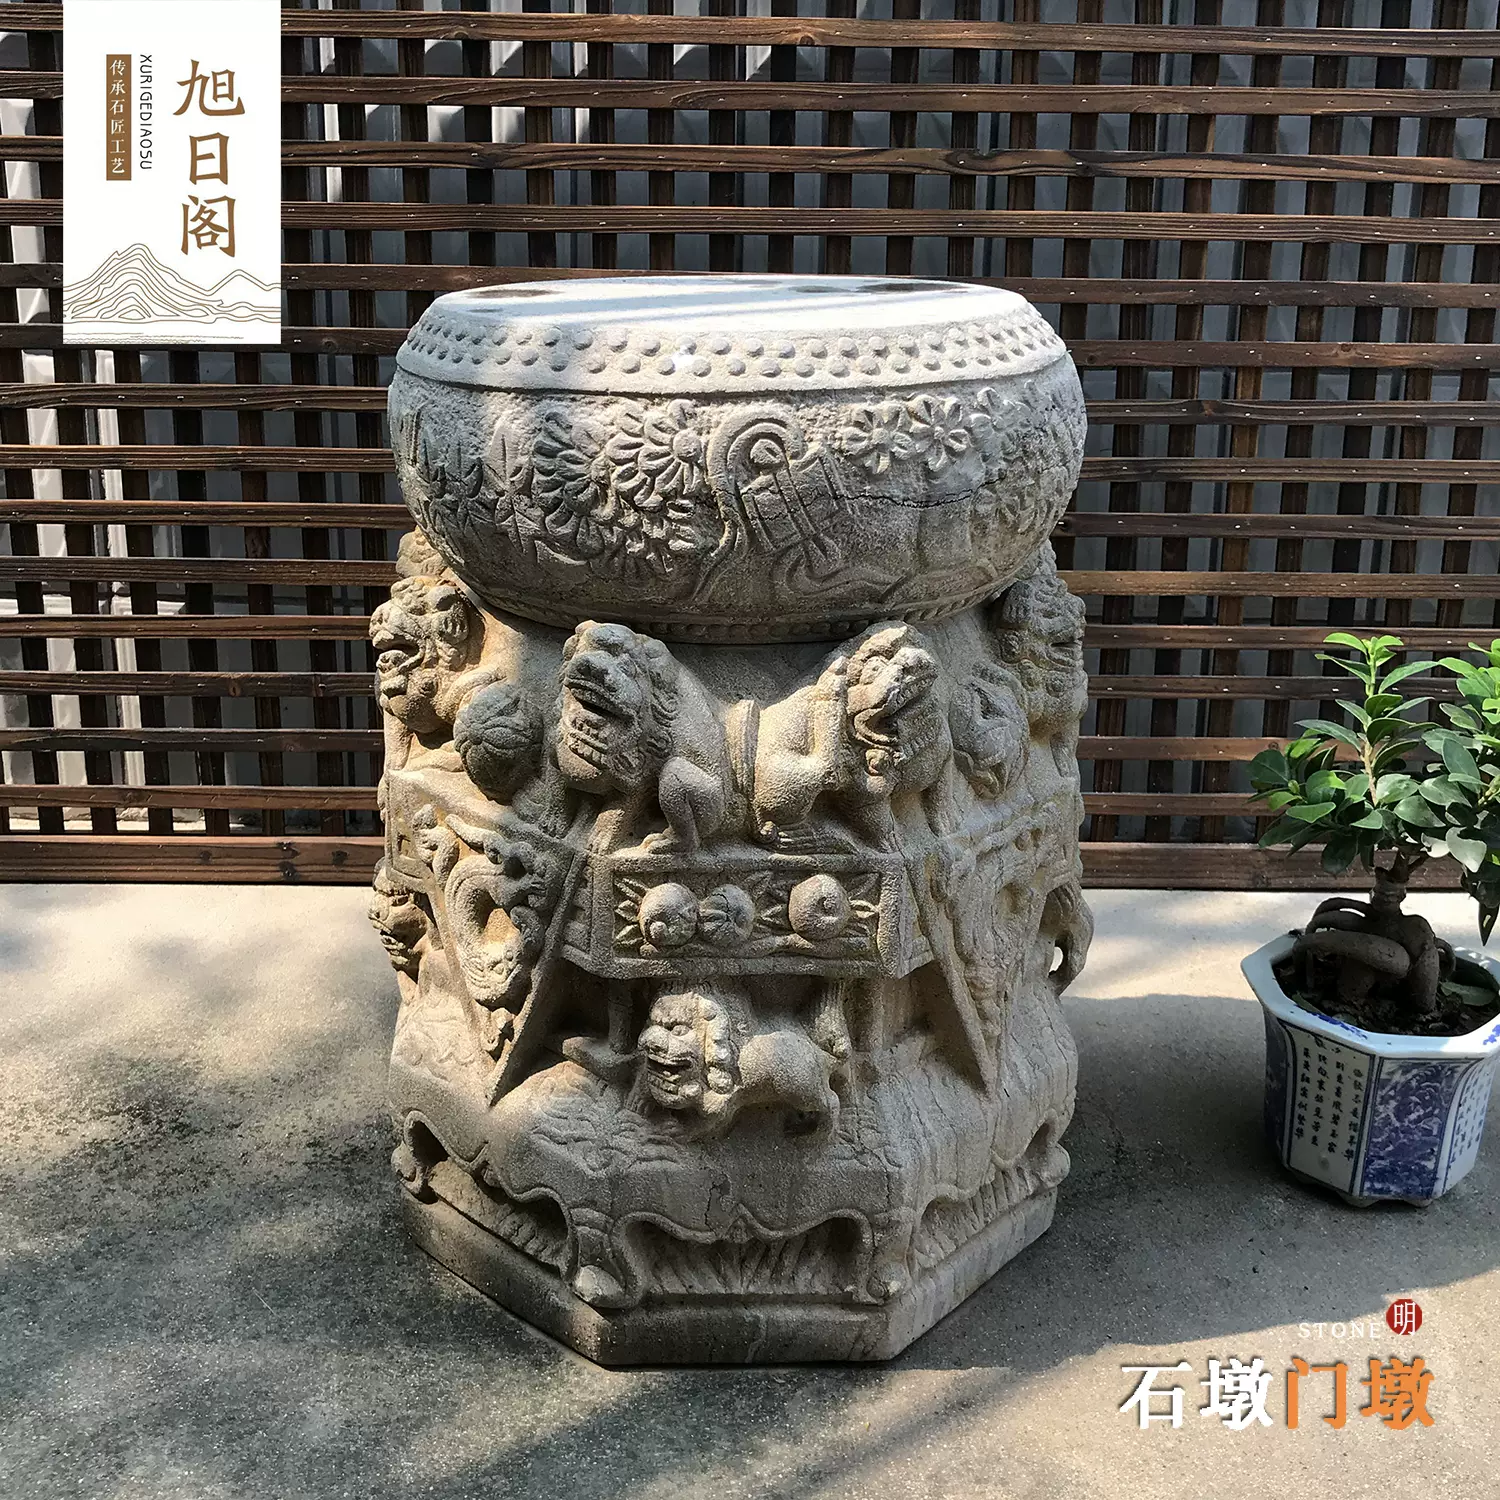 旧石墩柱顶石柱脚收藏仿明清老旧石器石雕石座花台老柱墩青石门墩-Taobao